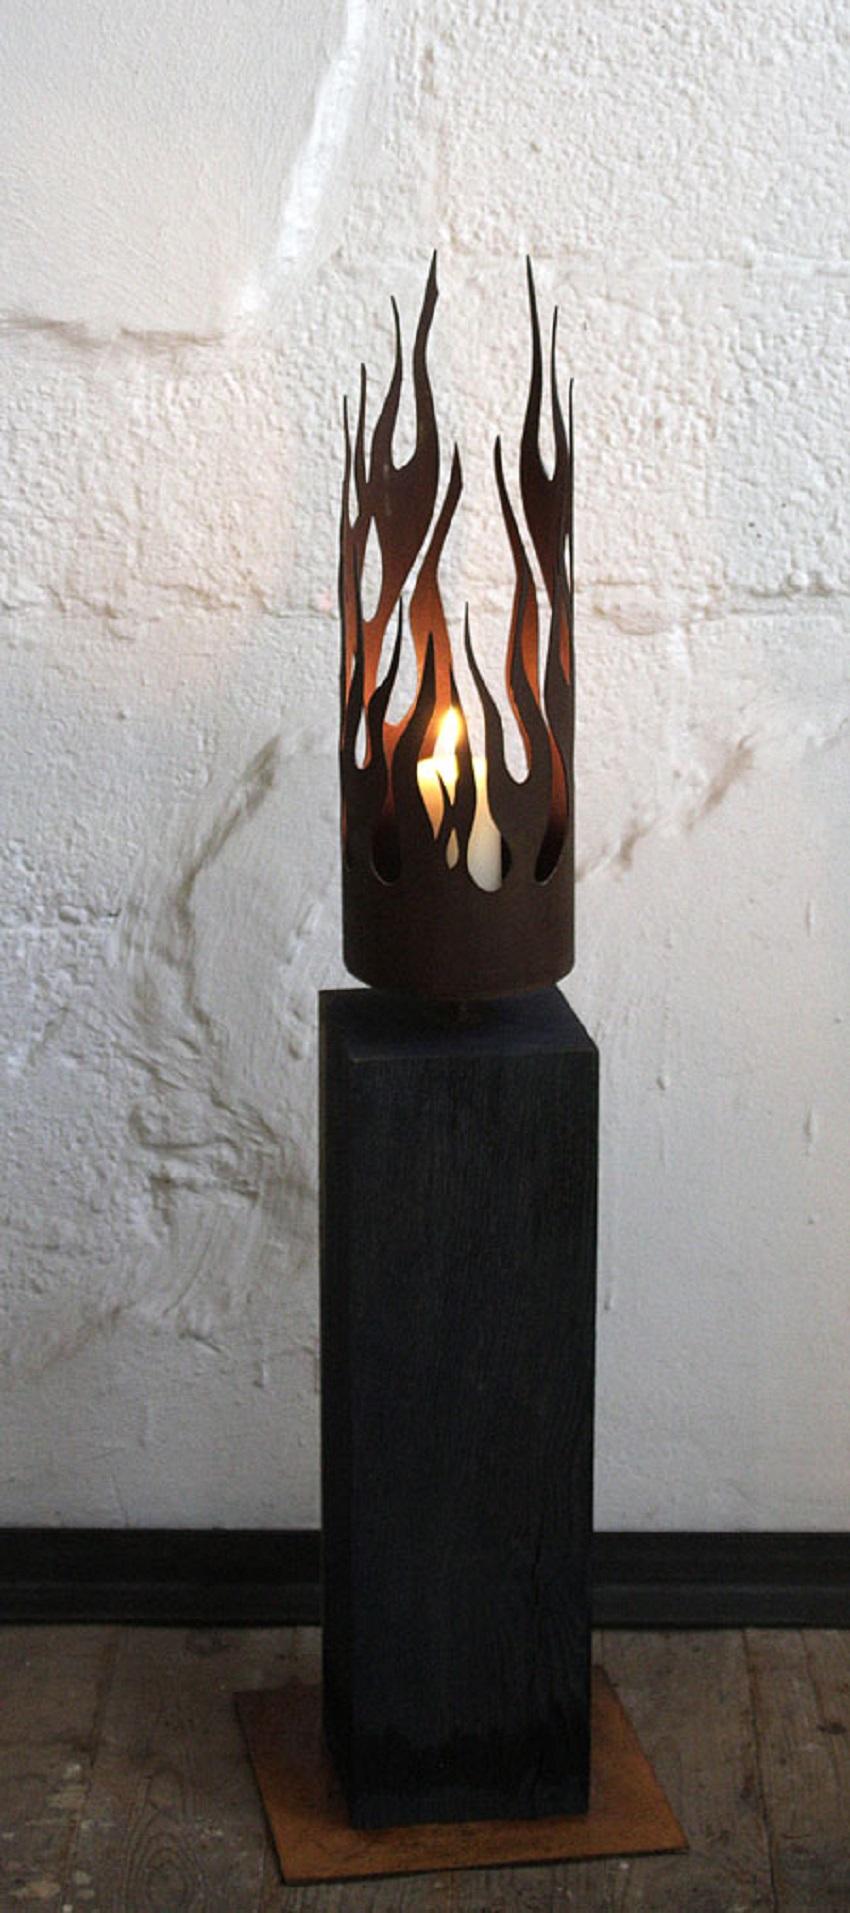 Bougeoir unique - "Flames" sur un piédestal en chêne oxydé - Hauteur moyenne - Mixed Media Art de Stefan Traloc